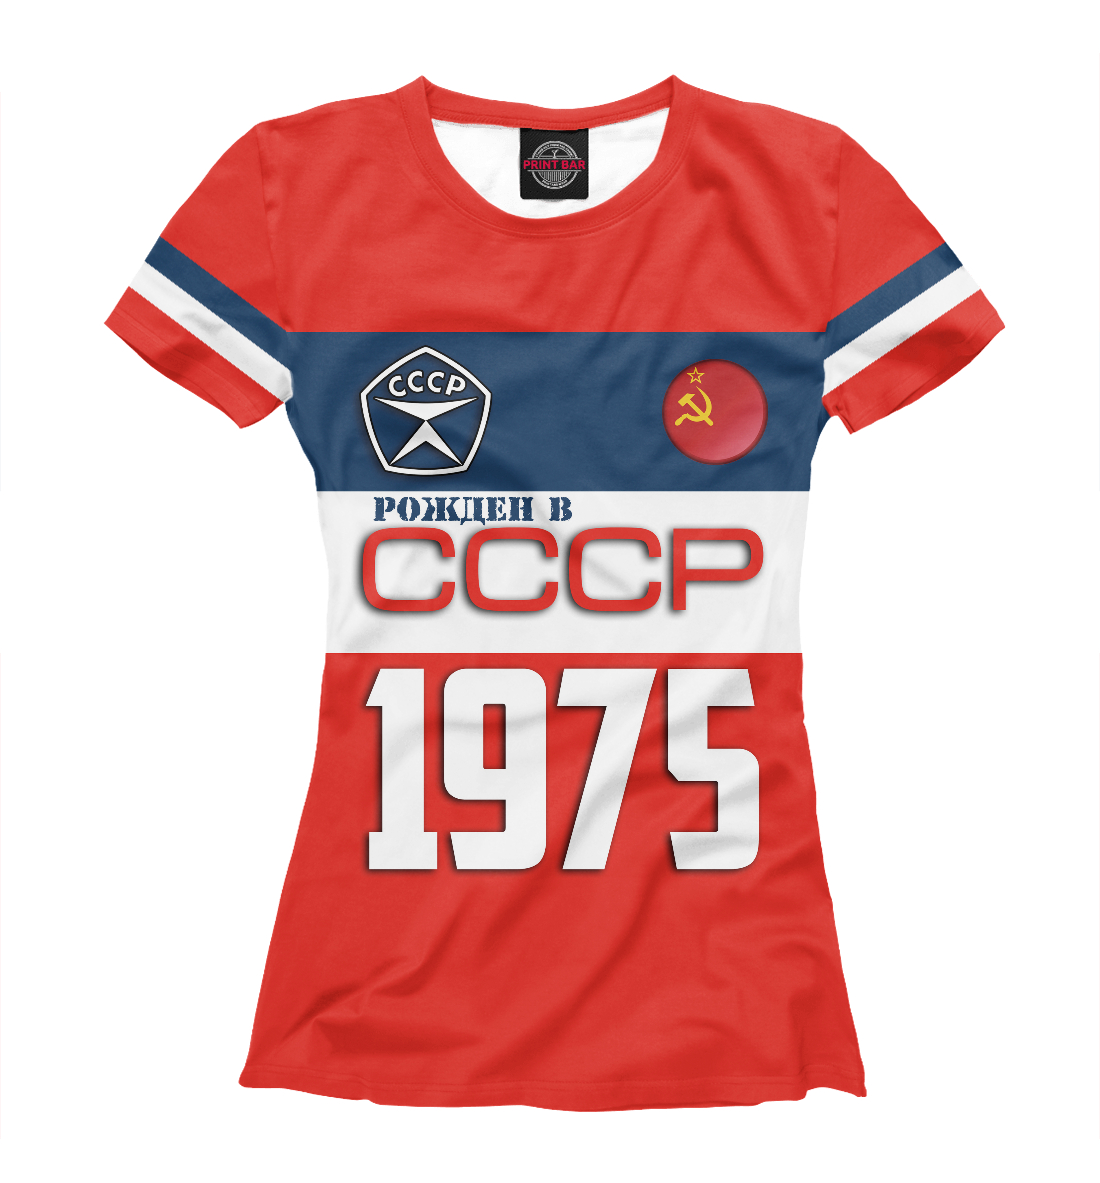 Футболка Рожден в СССР 1975 год для женщин, артикул: SSS-336571-fut-1mp